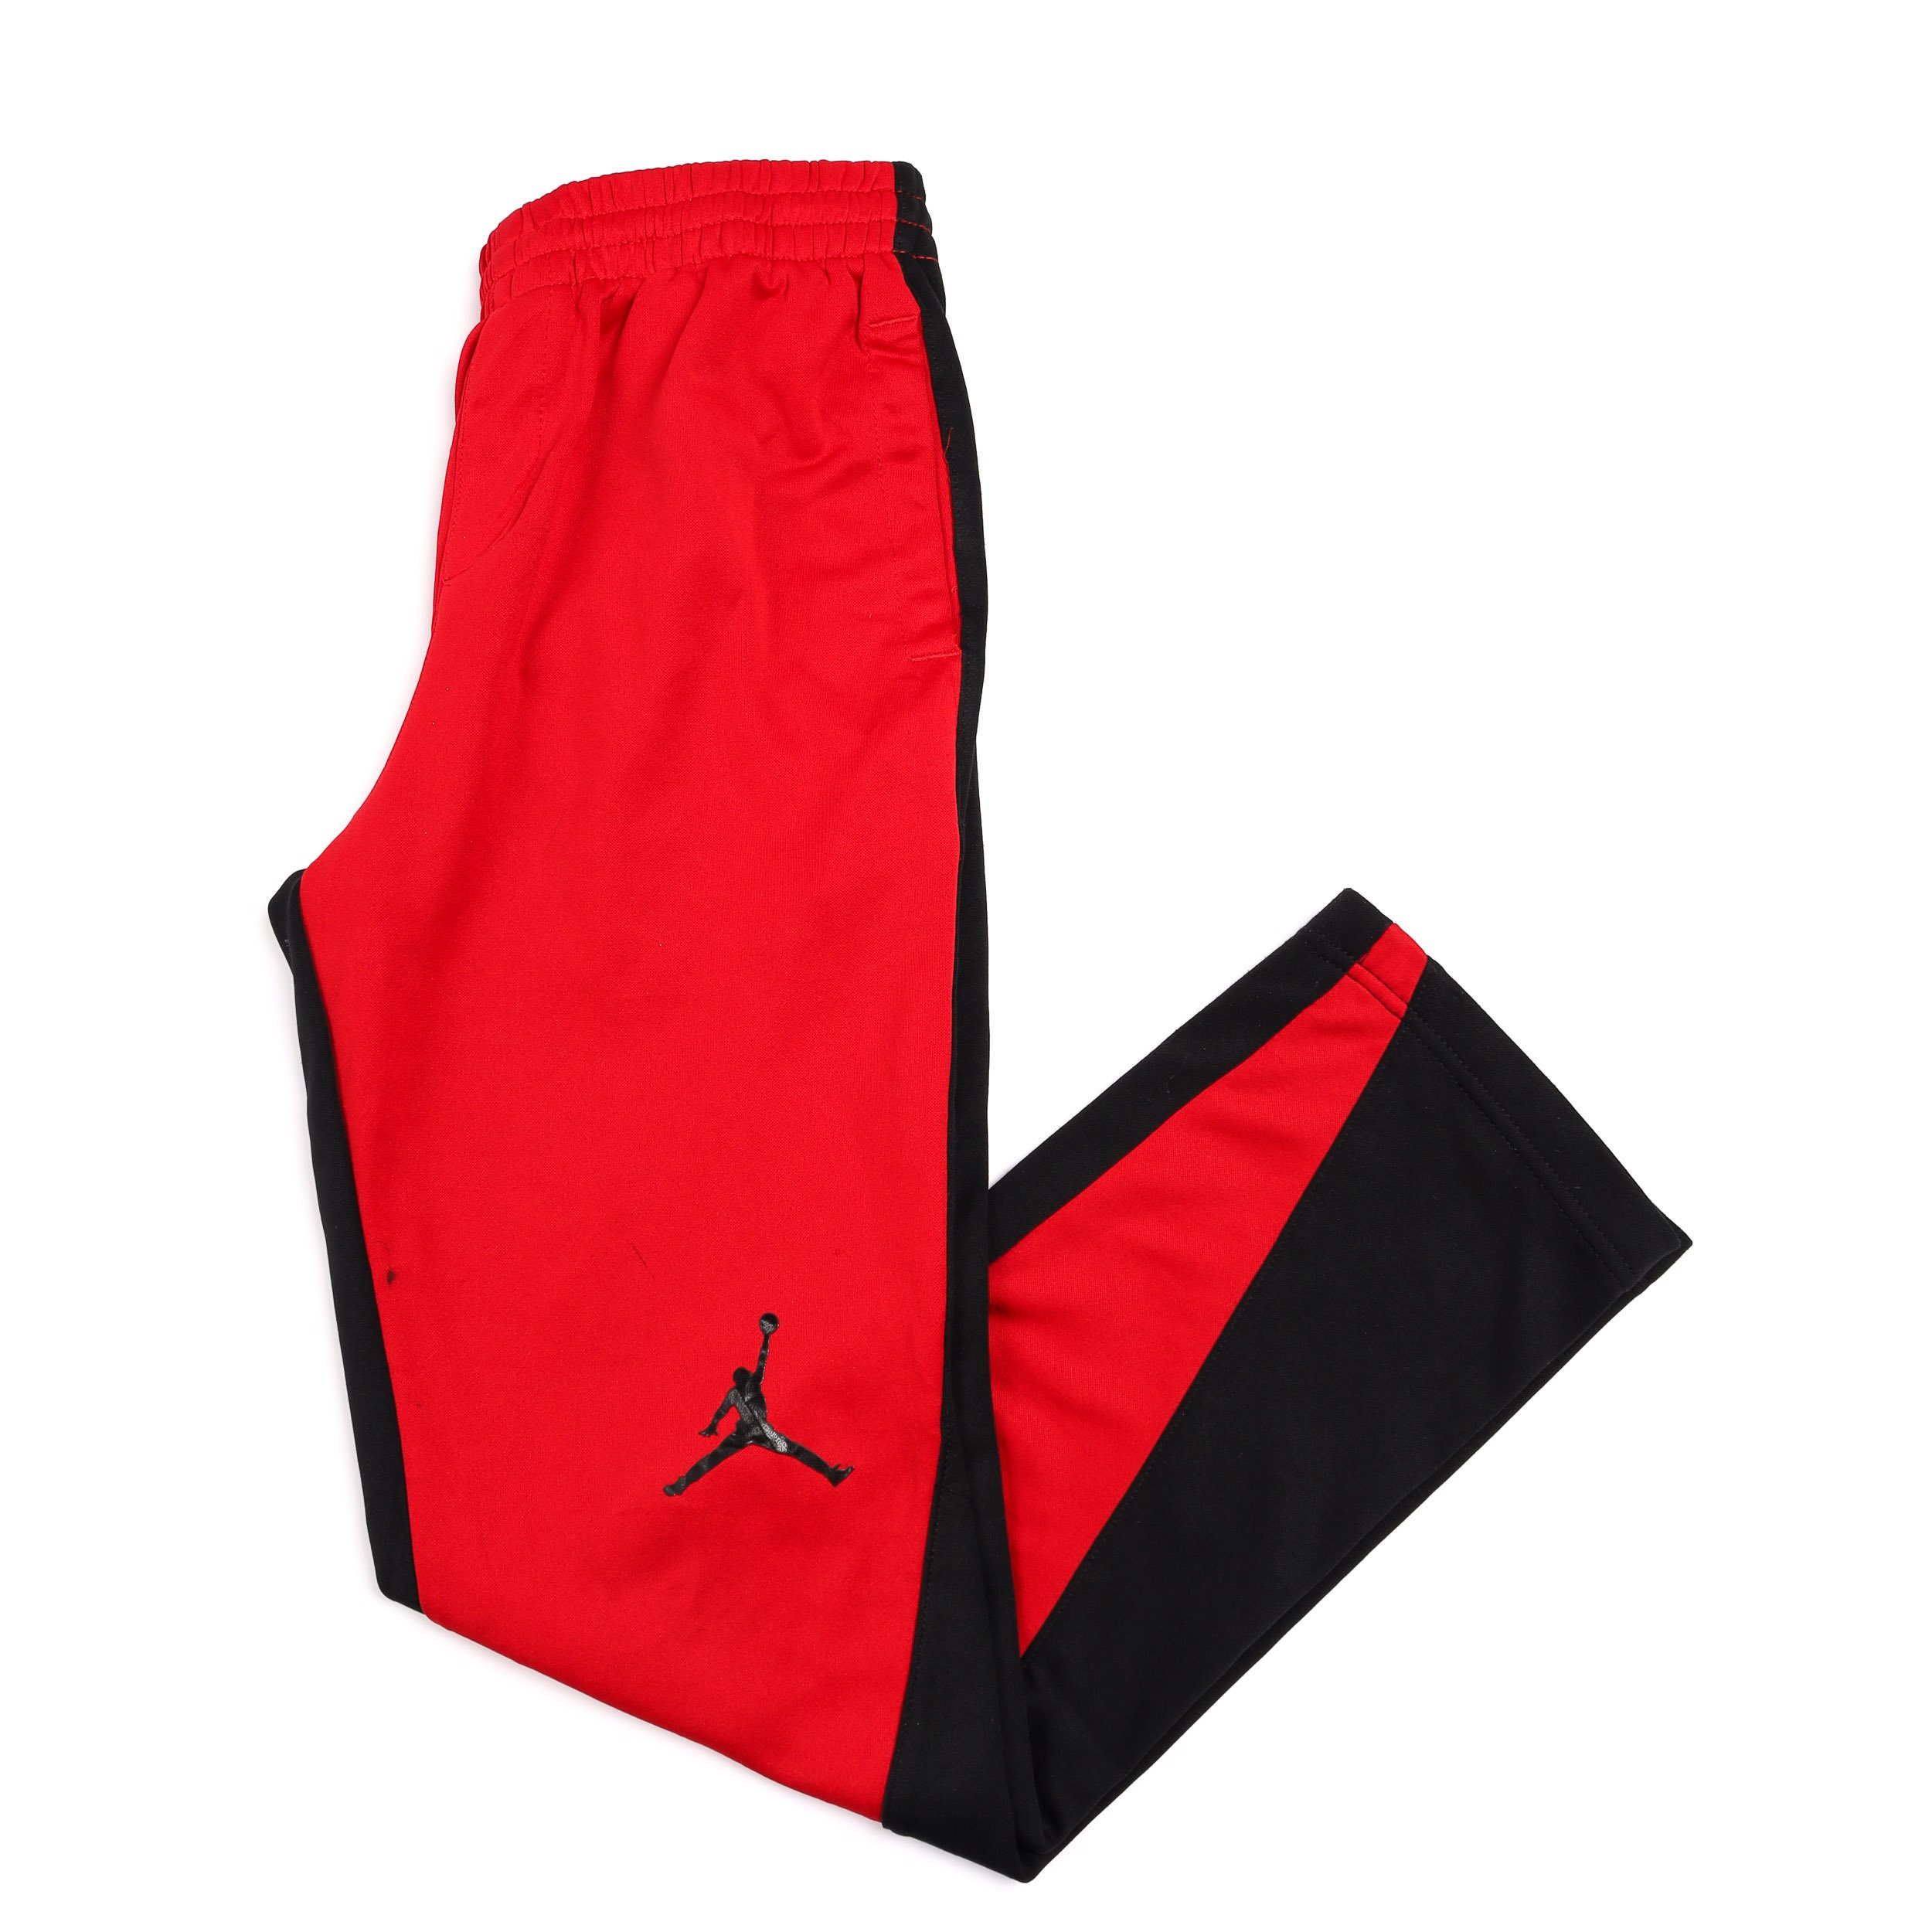 black and red jordan pants